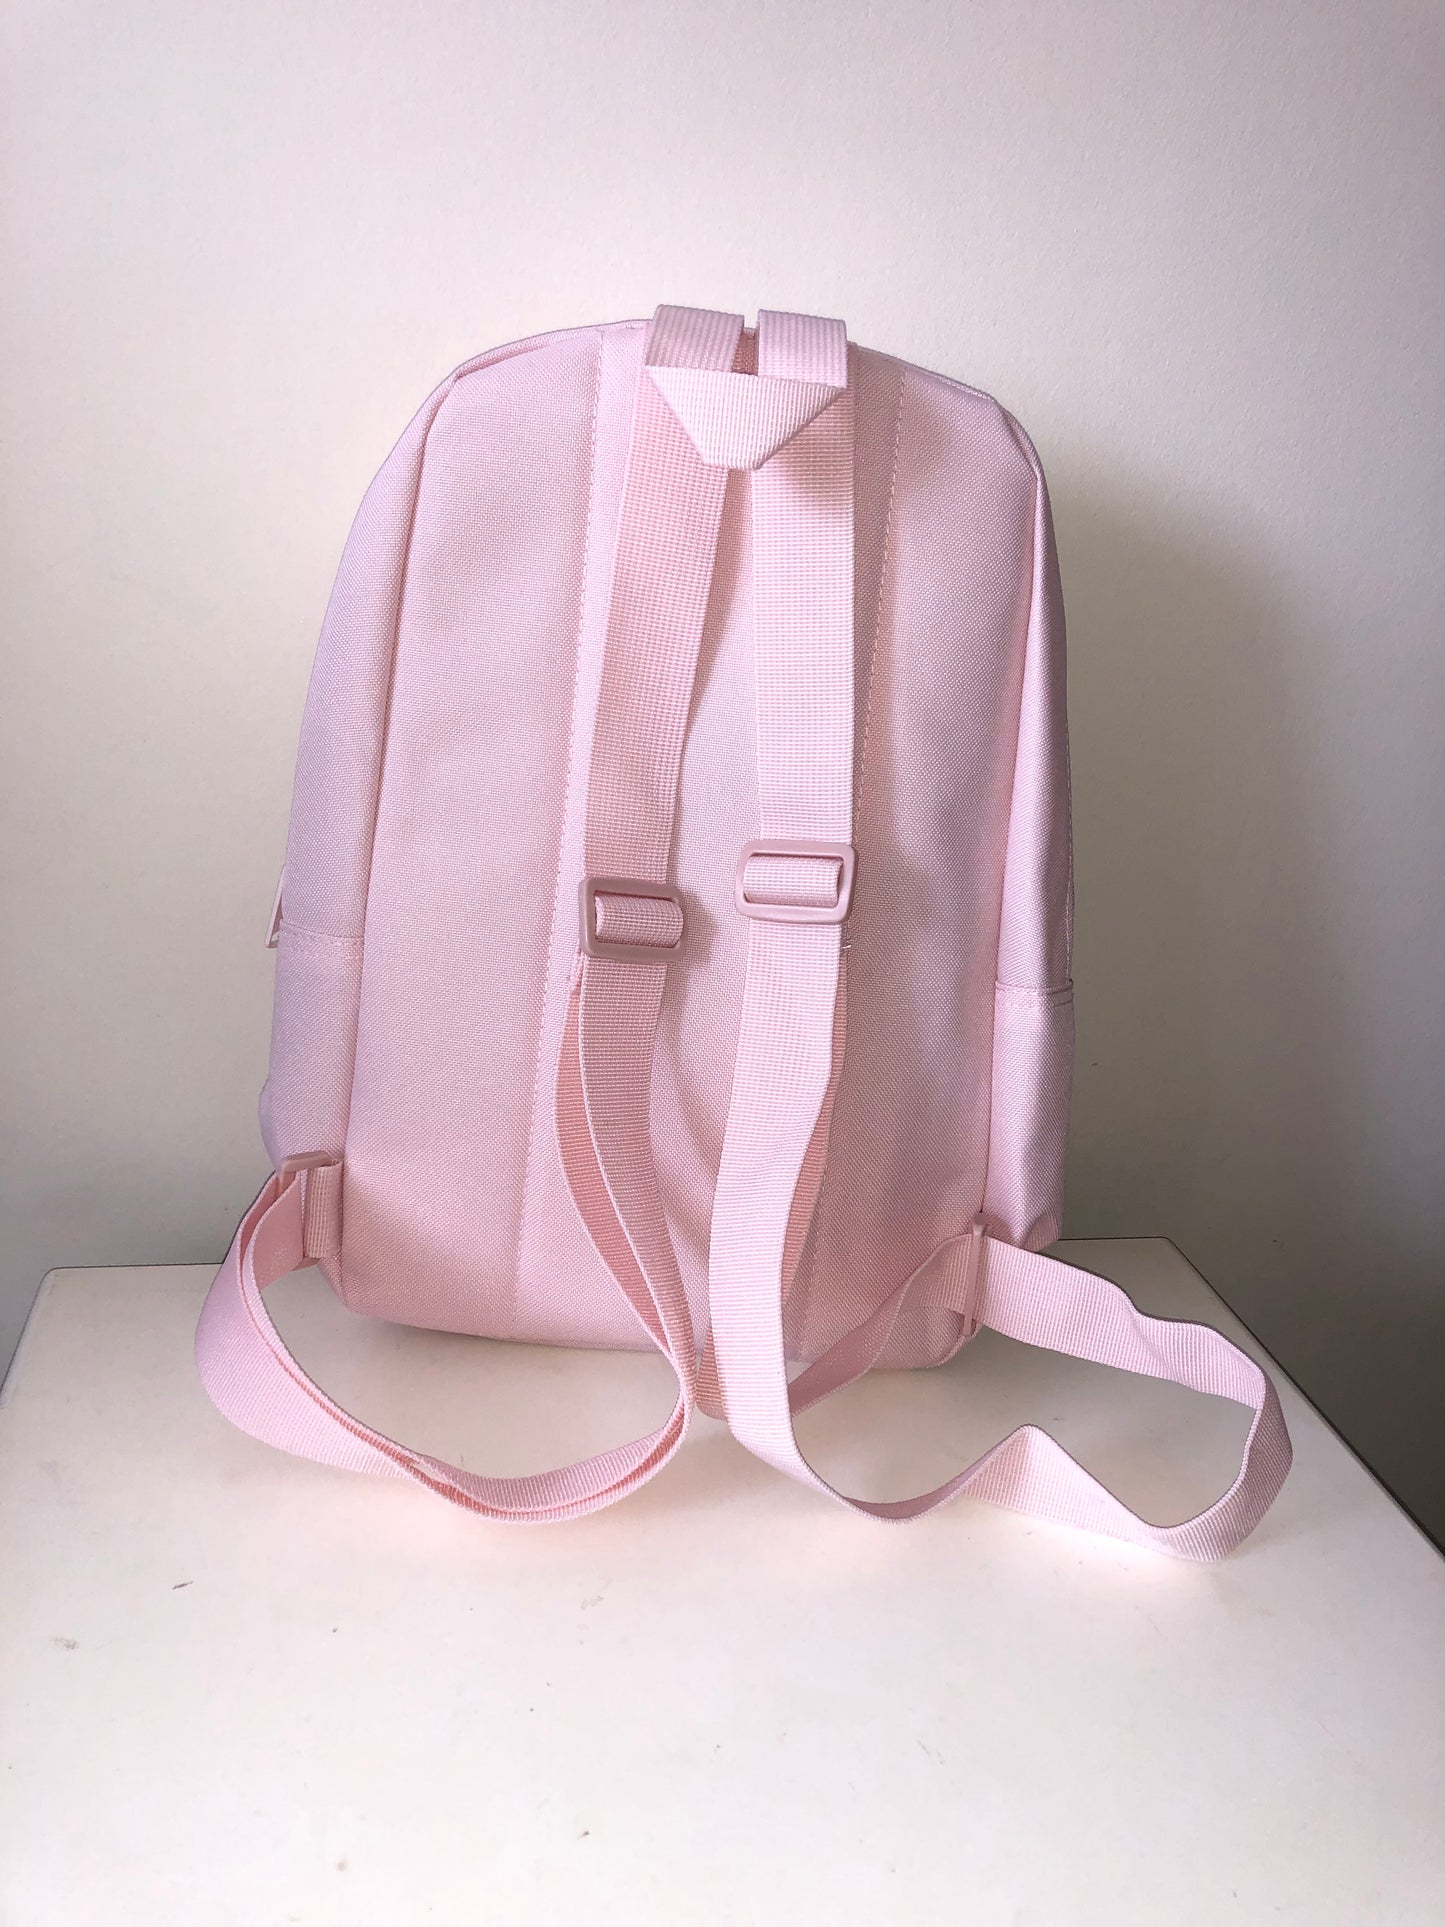 Pink Mini Backpack - Unicorn